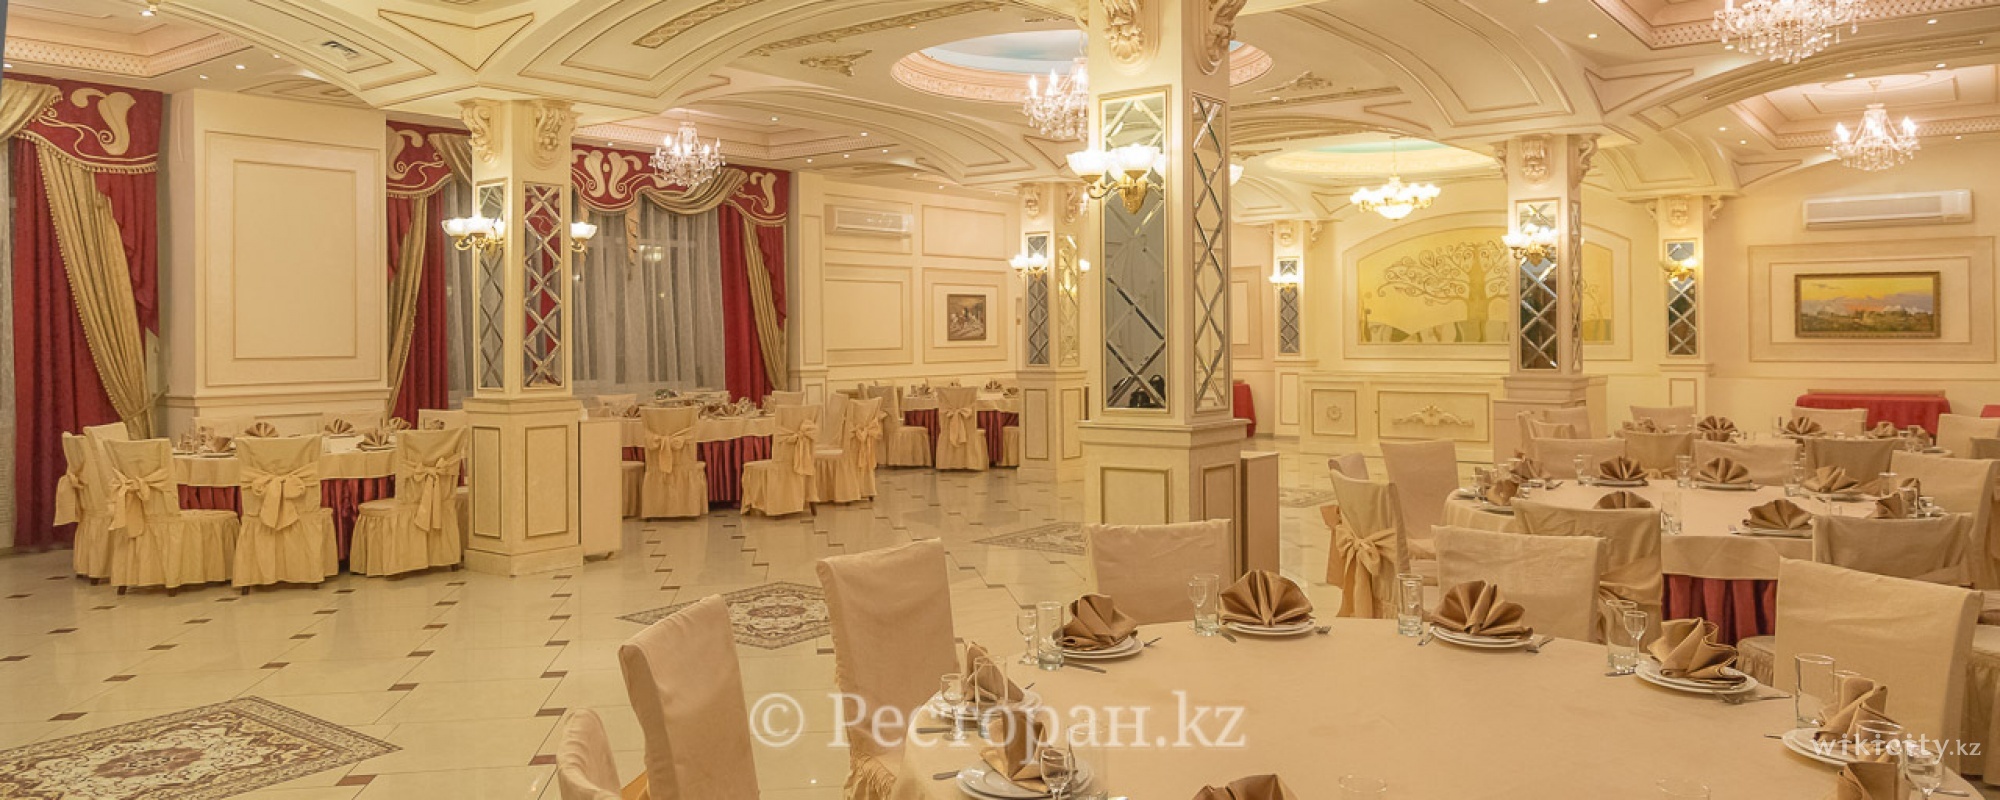 Фото Алтын Холл - Almaty. малый зал 130 гостей